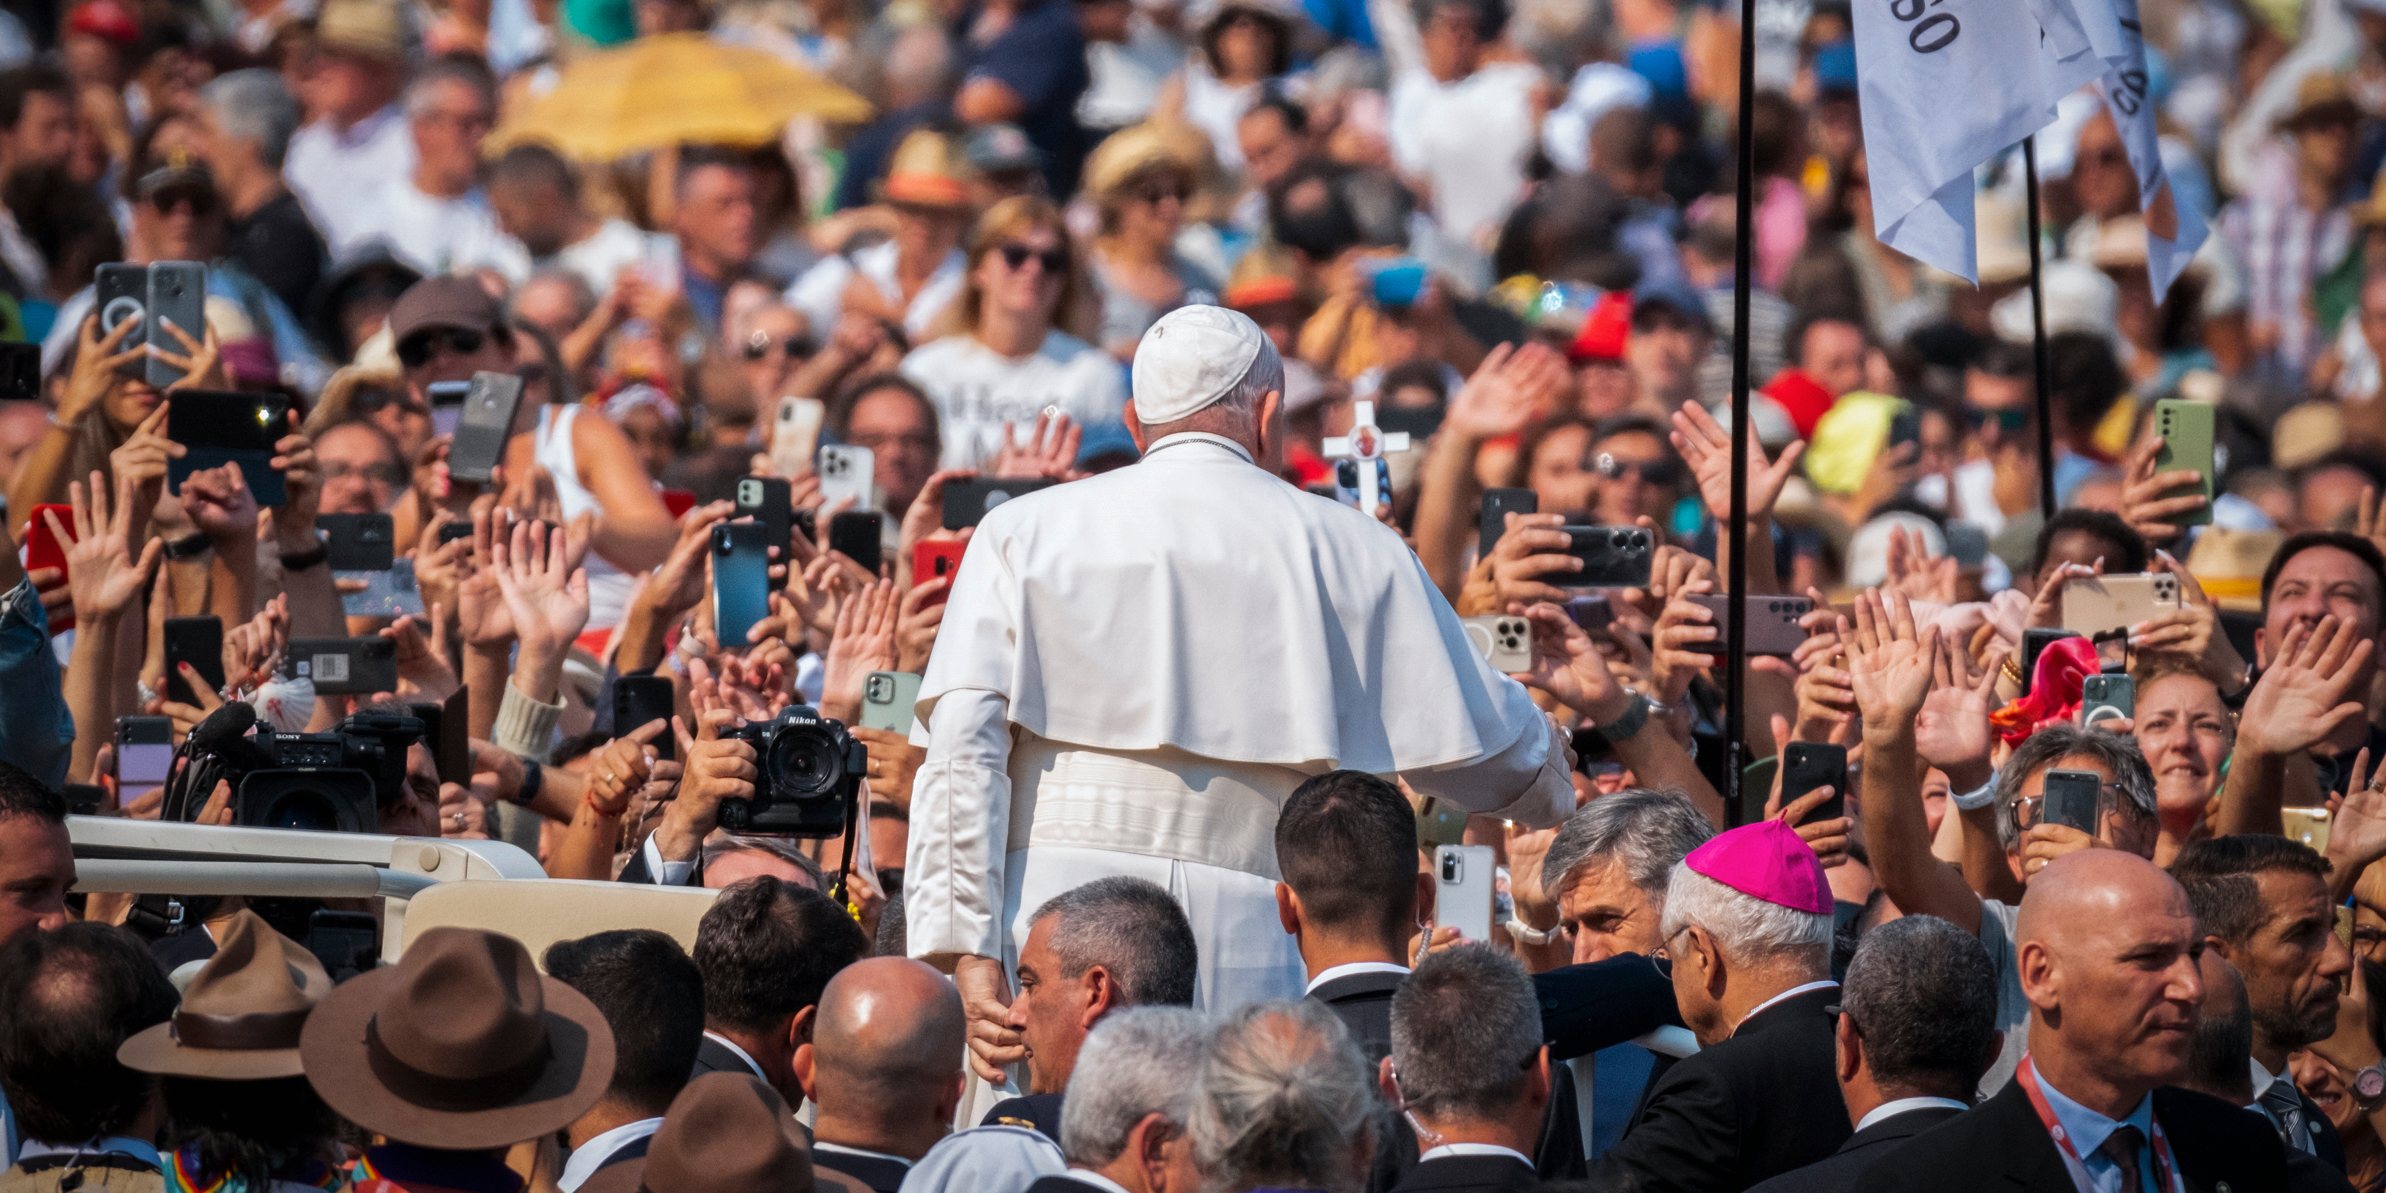 O Papa Francisco regressou este sábado a Fátima. Durante 147 minutos, rezou o terço na Capelinha das Aparições, improvisou um discurso e abençoou inúmeras crianças